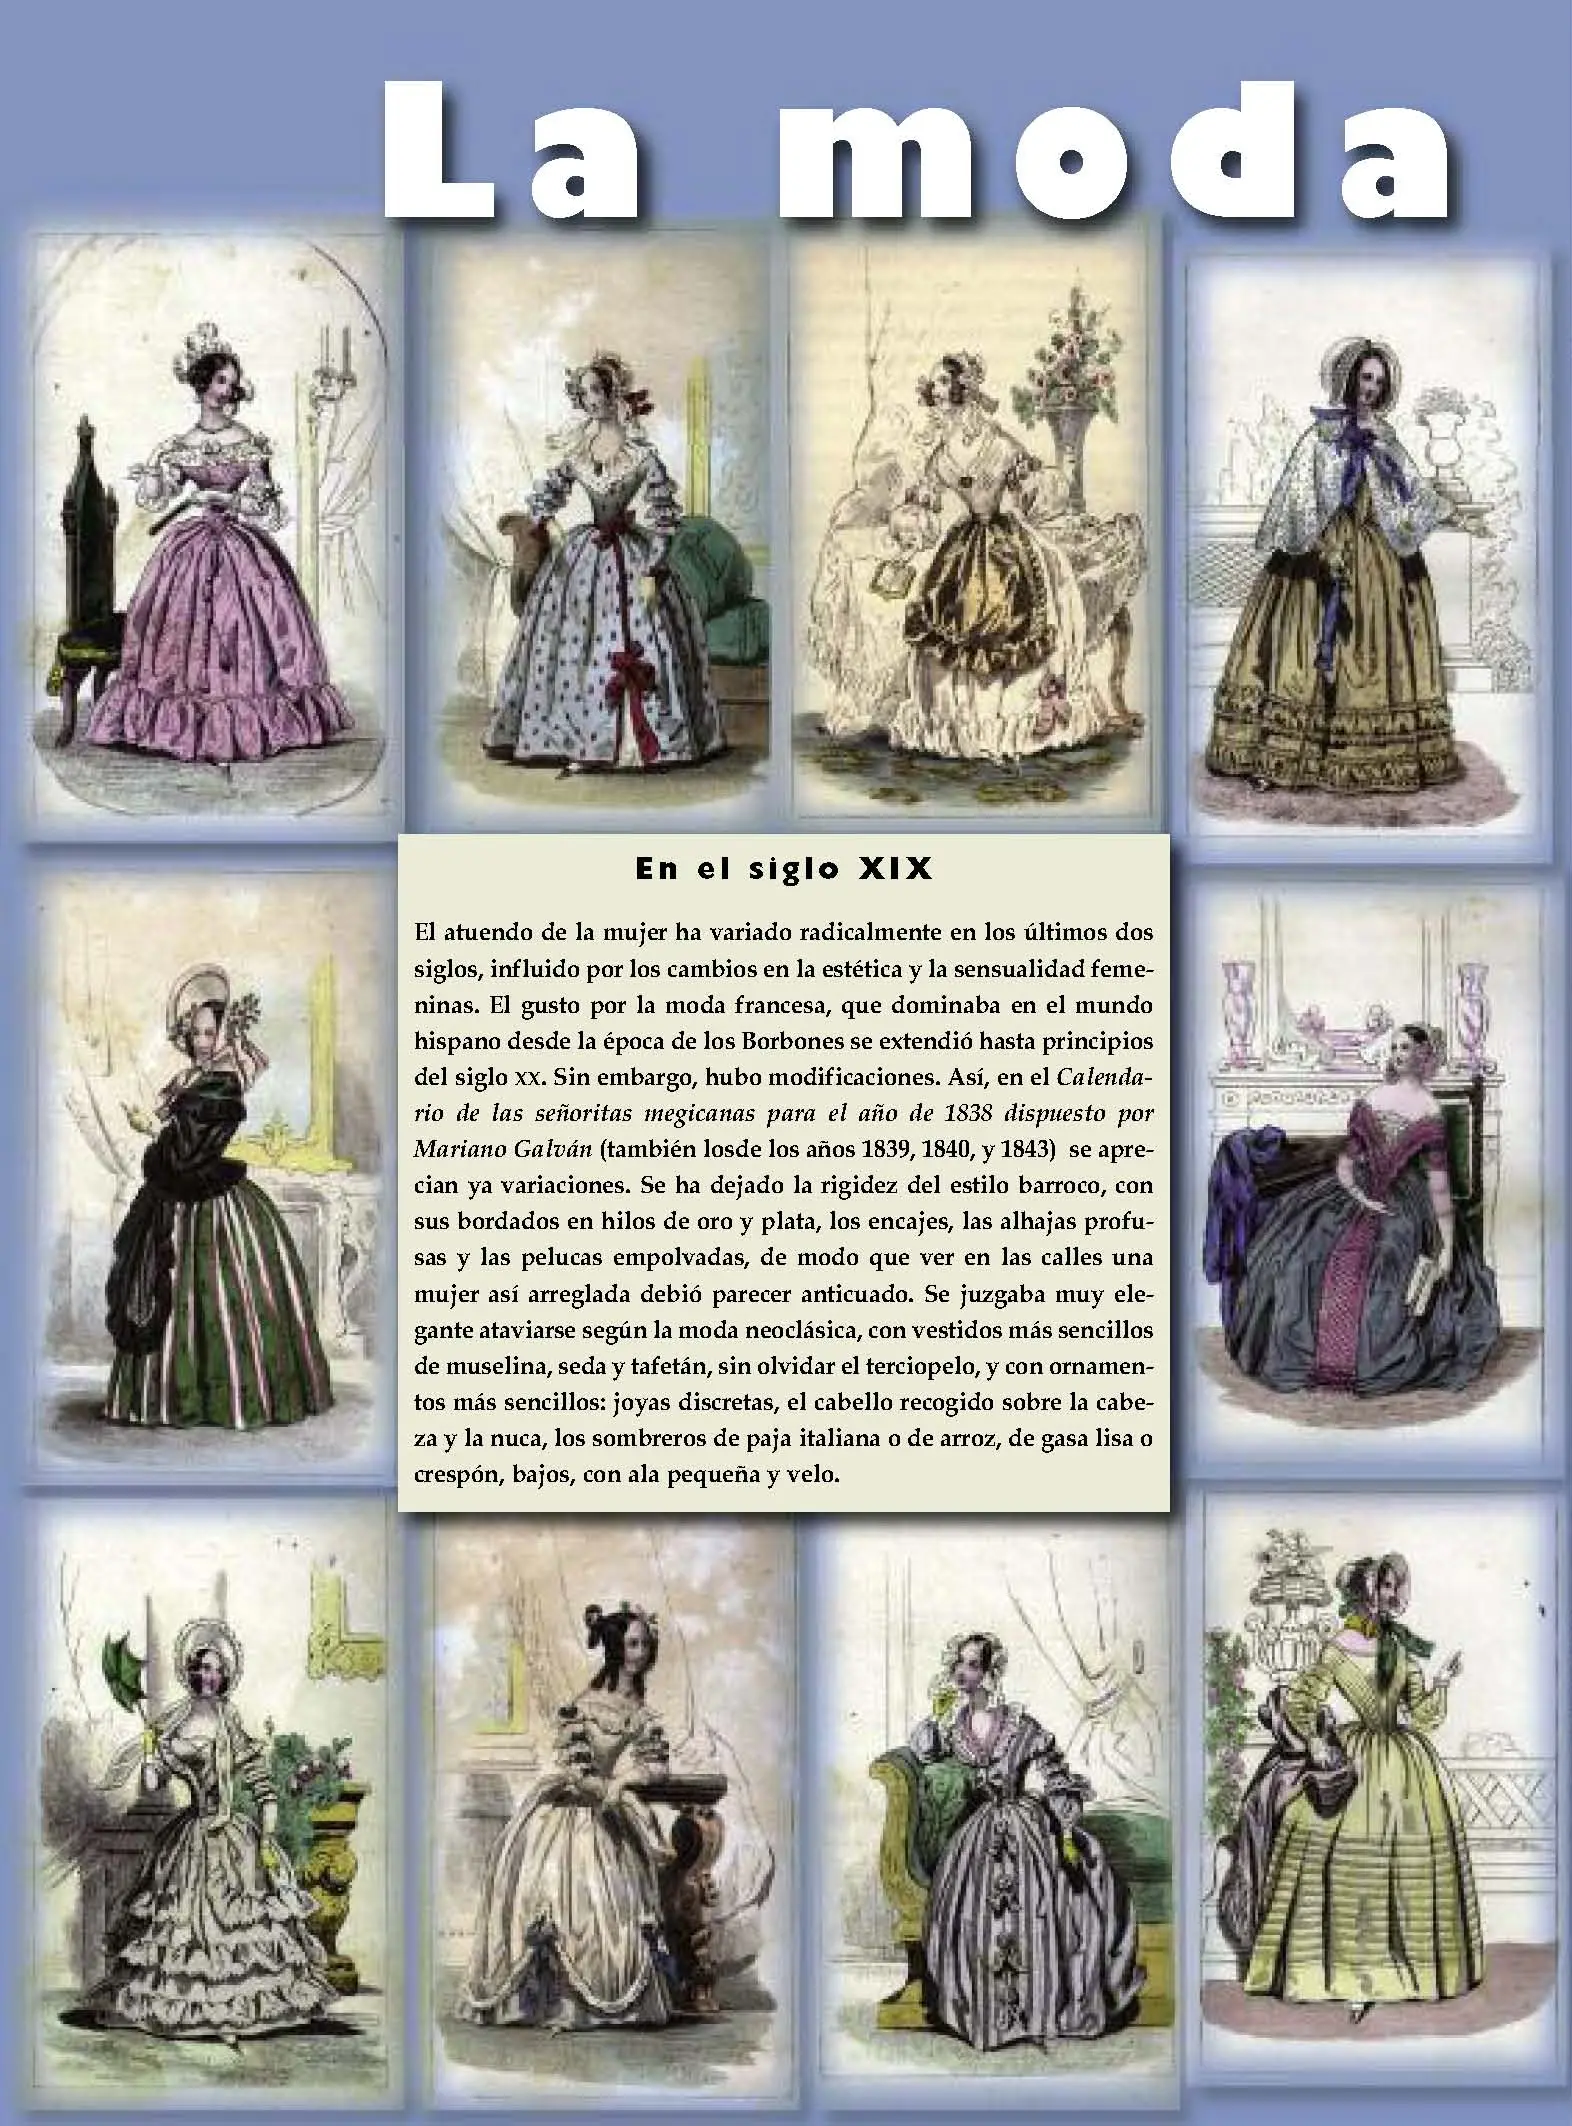 vestimenta del siglo xix en mexico - Cómo era la vestimenta en México en el siglo XIX